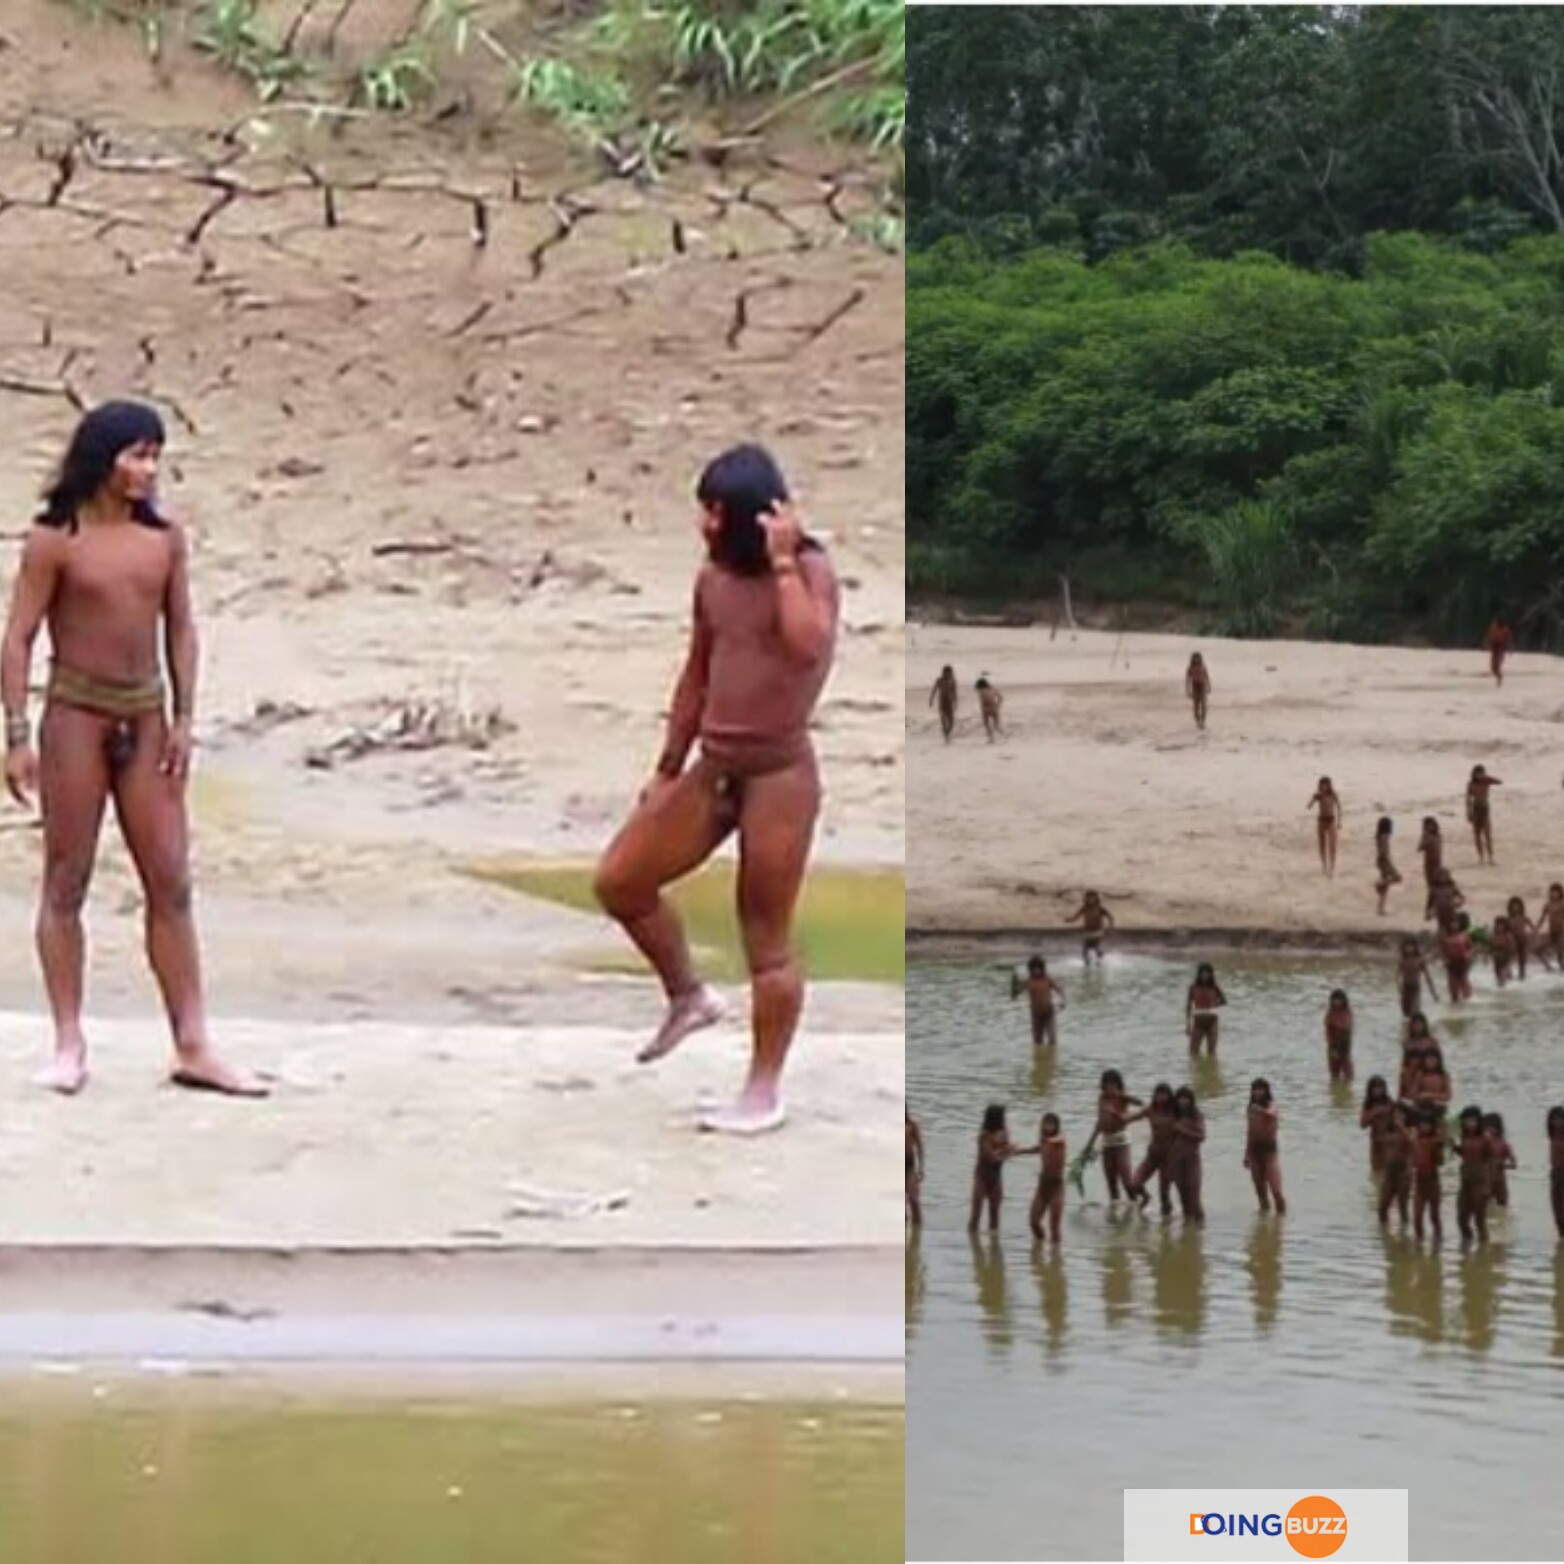 Mashco Piro : Des Images Montrent La Tribu De Chasseurs-Cueilleurs Nus Isolés Au Pérou (Video)